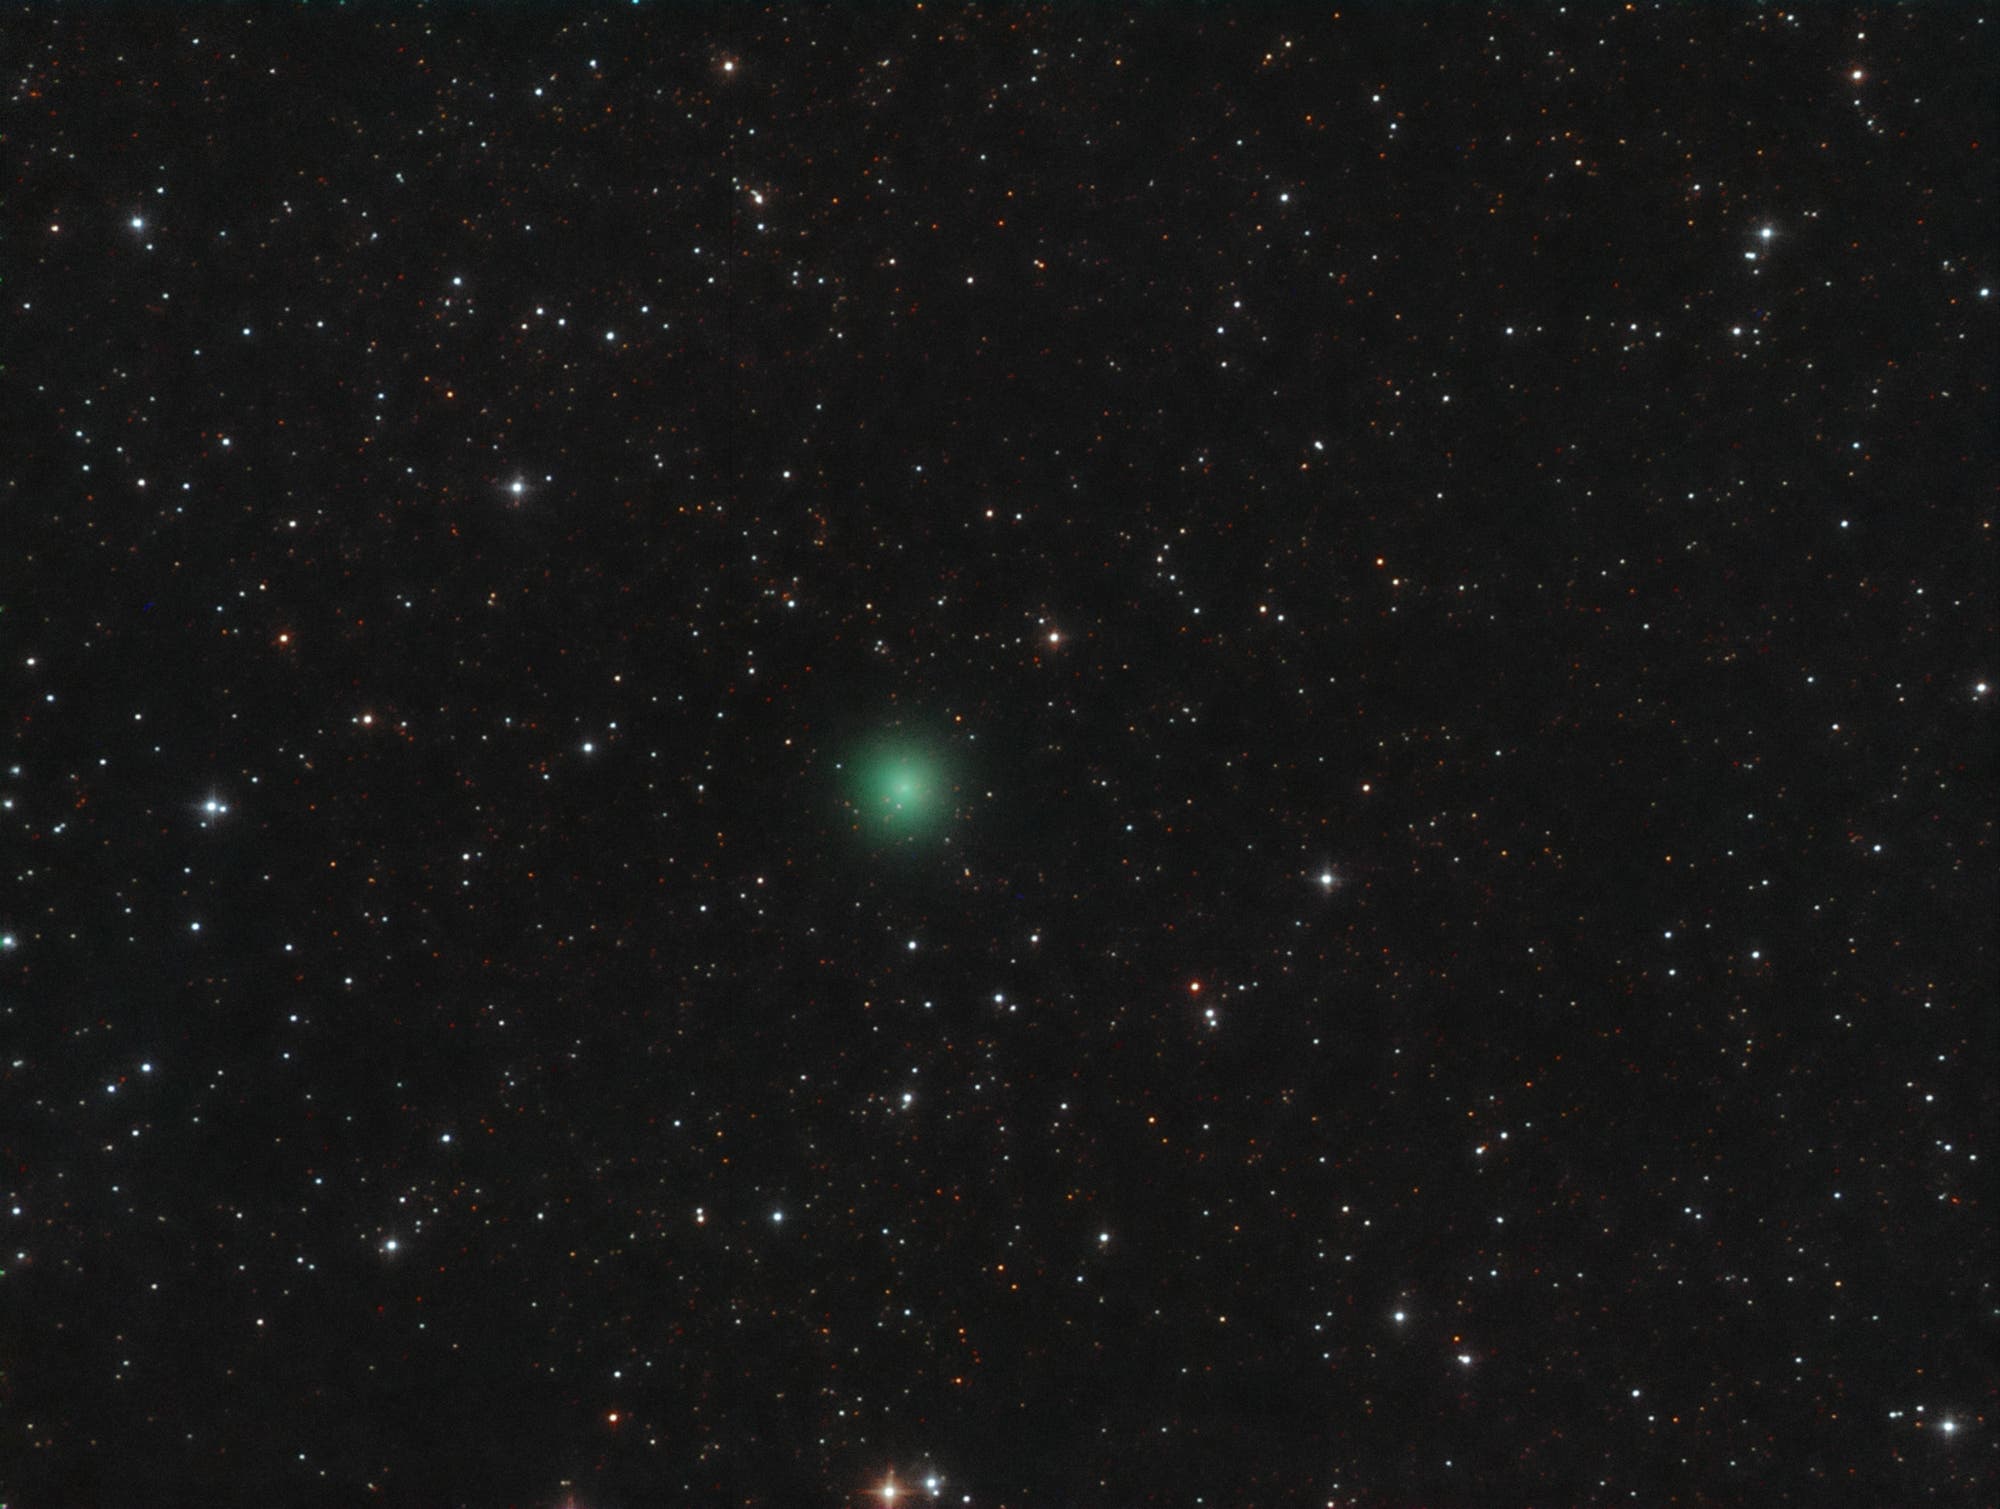 Comet C/2017 S3 PANSTARRS in outburst